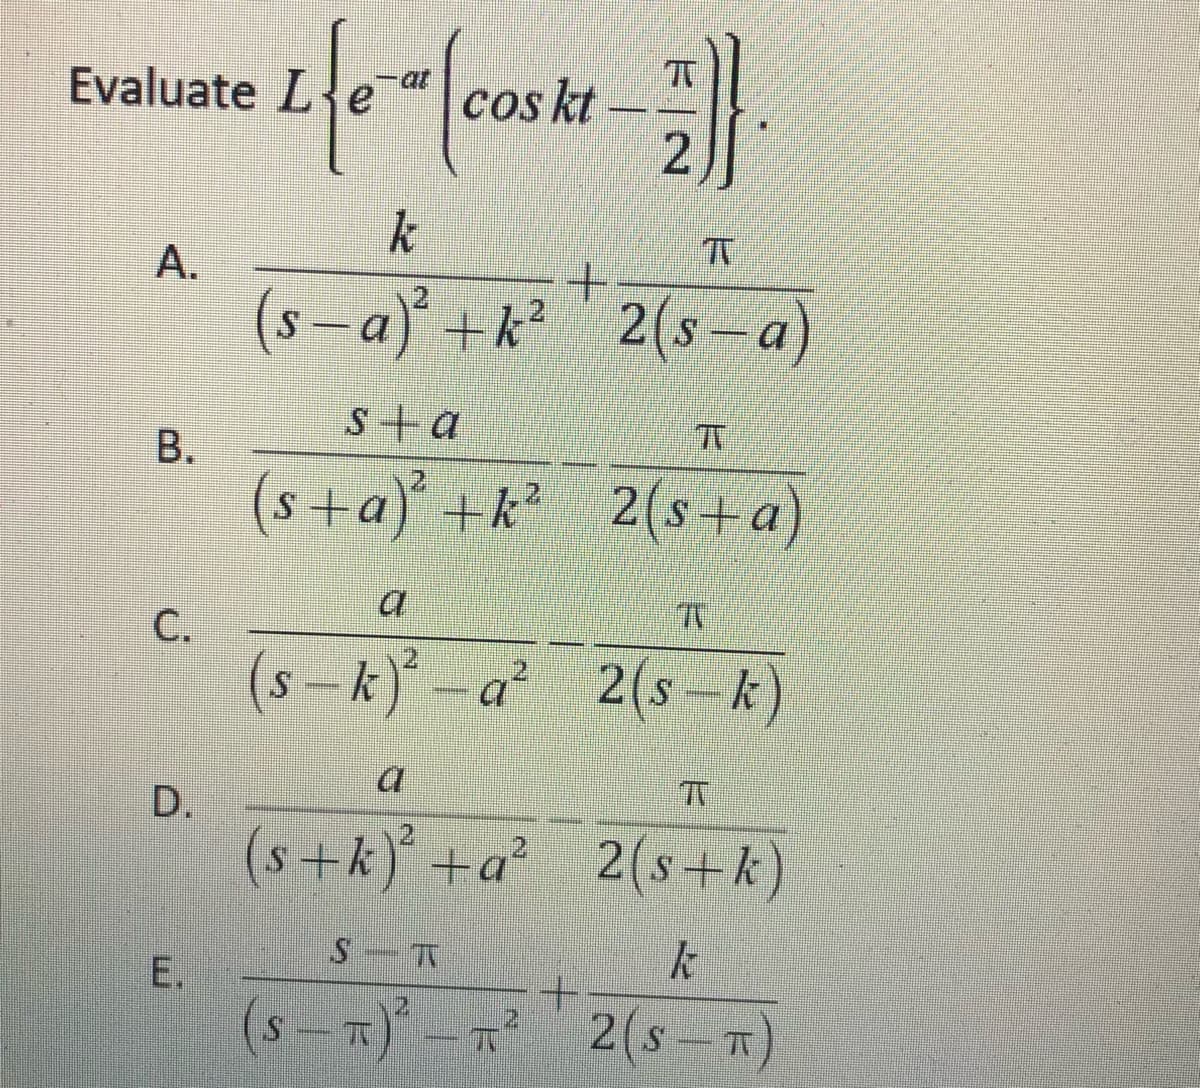 Evaluate Le
at
Cos kt
k
A.
- a) +k?2(s- a
s+ a
B.
(s+a) +k 2(s+a)
С.
2
(s-k)*-a*
2(s-k)
D.
(s+k) +a²
2(s+k)
E.
(s – T)* - R
2(s -x)
2.
